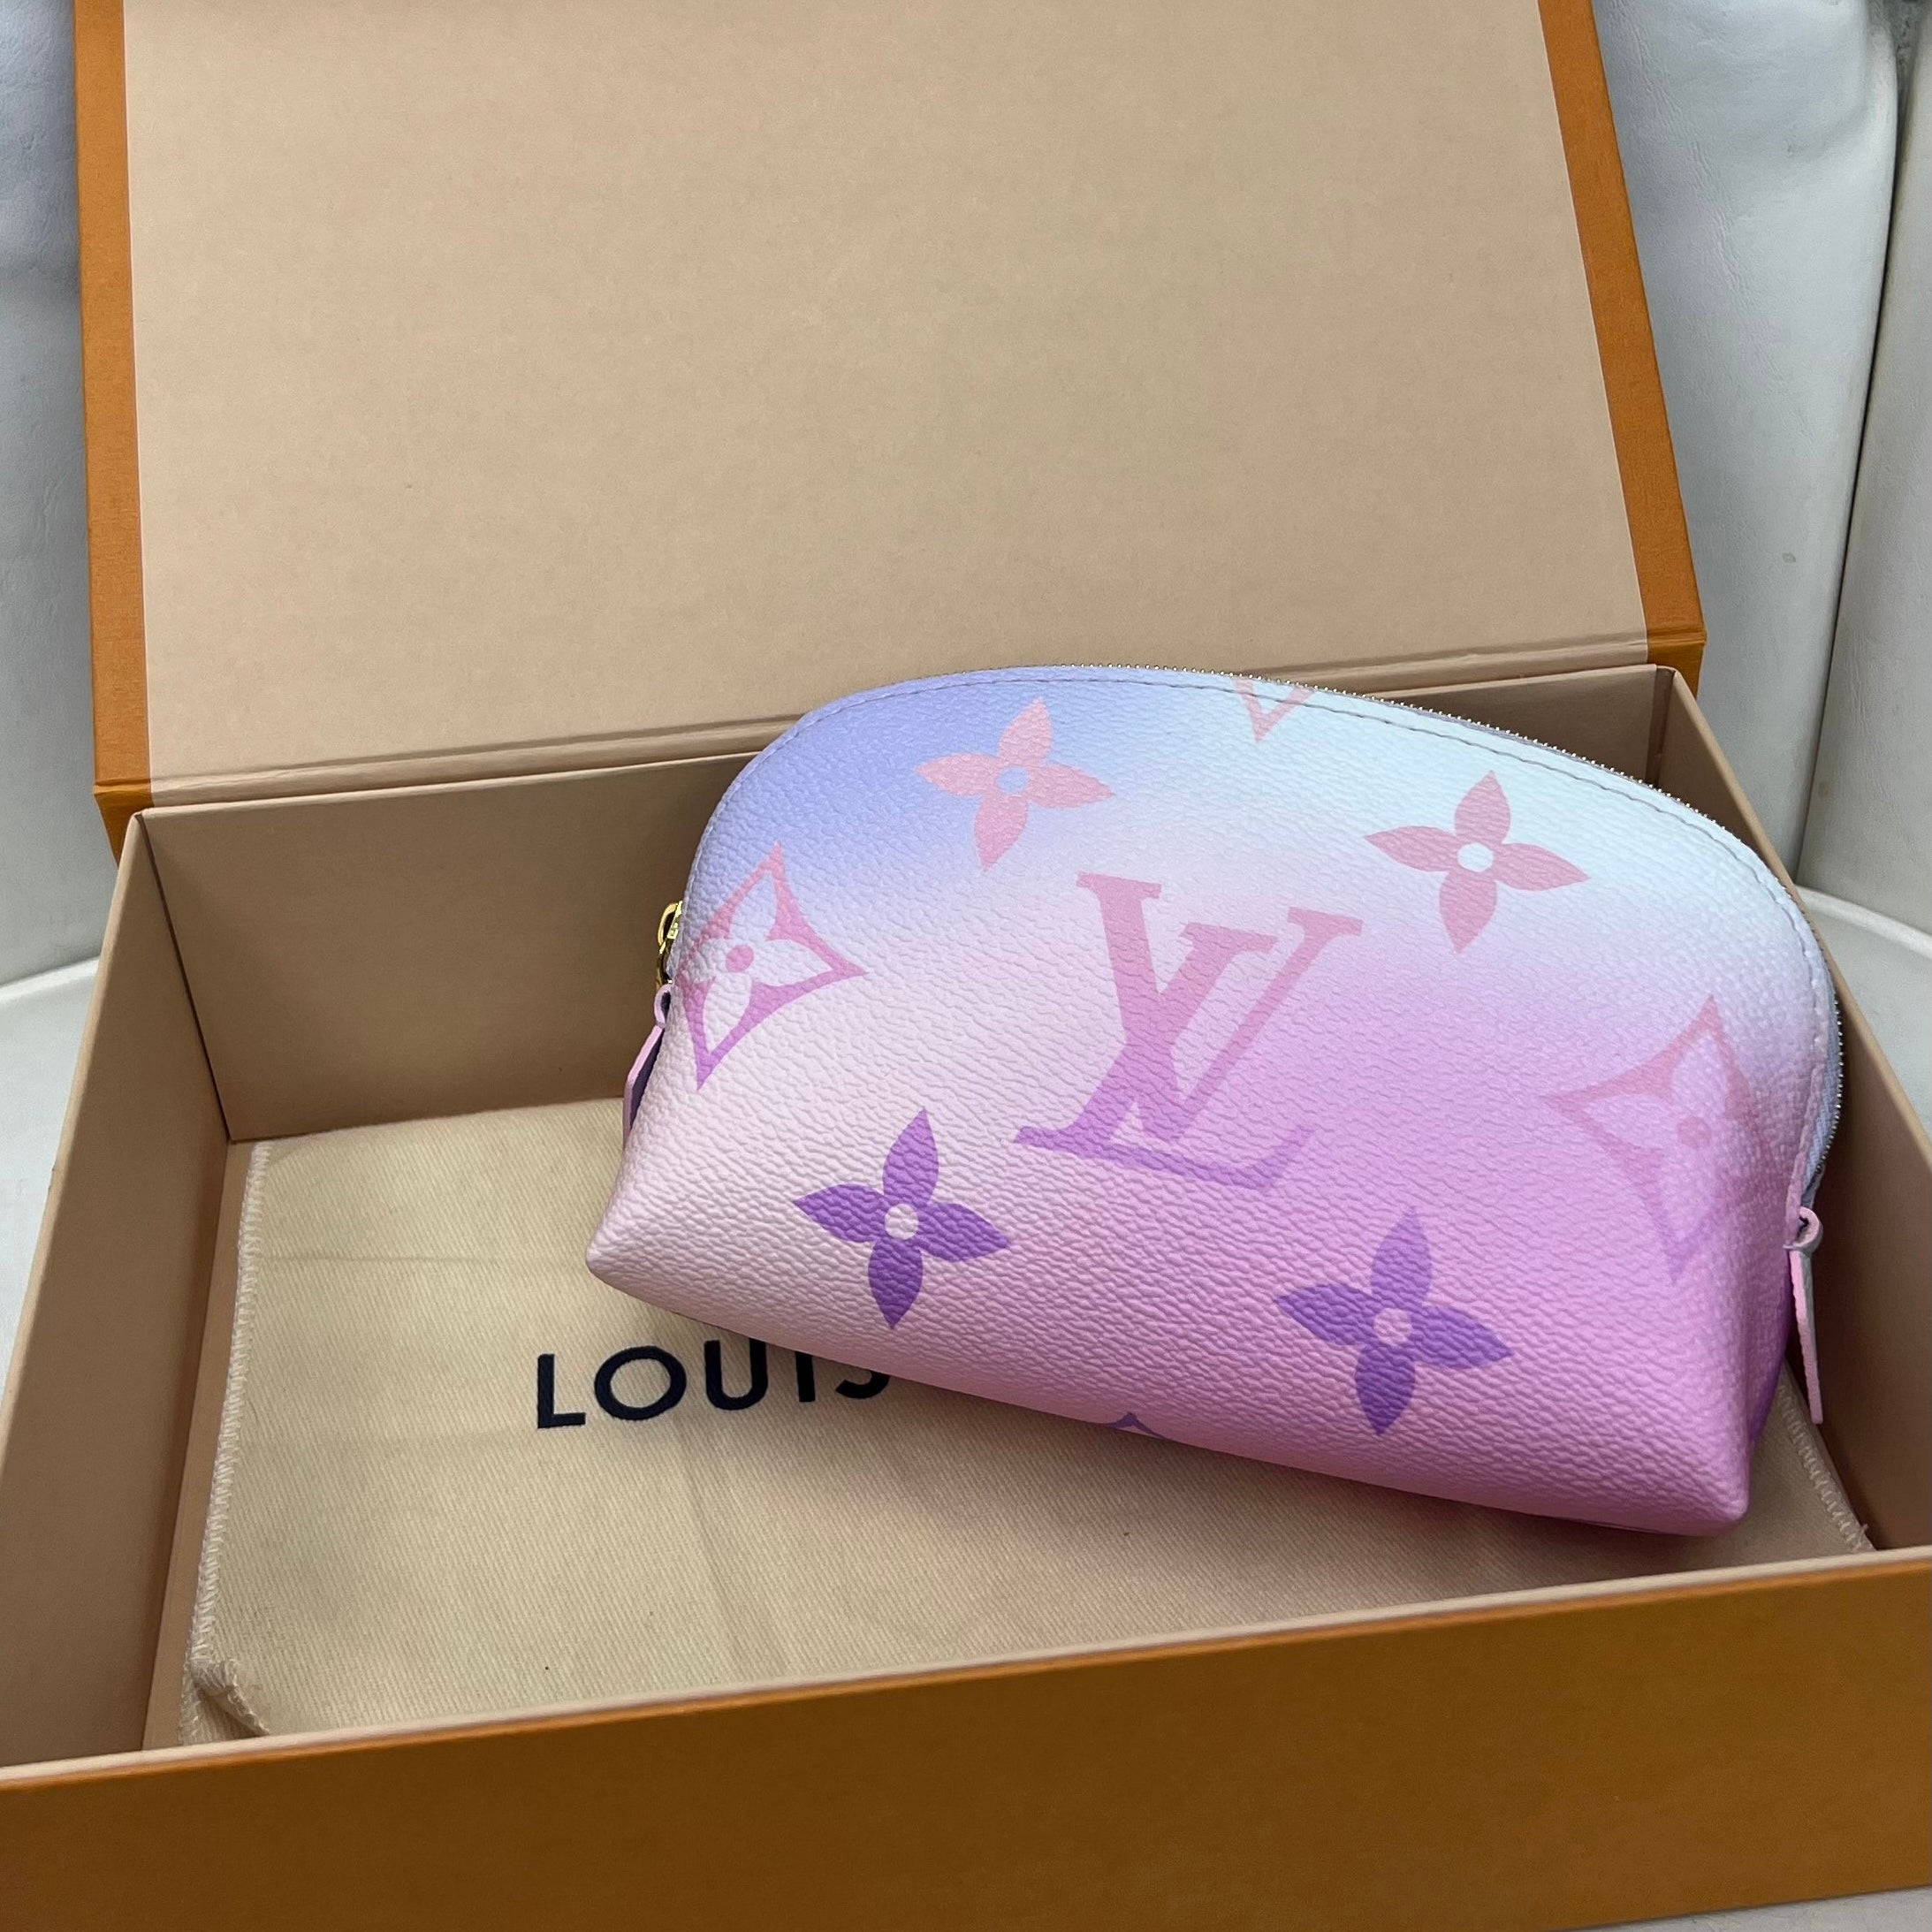 Louis Vuitton Escale Cosmetic Pouch